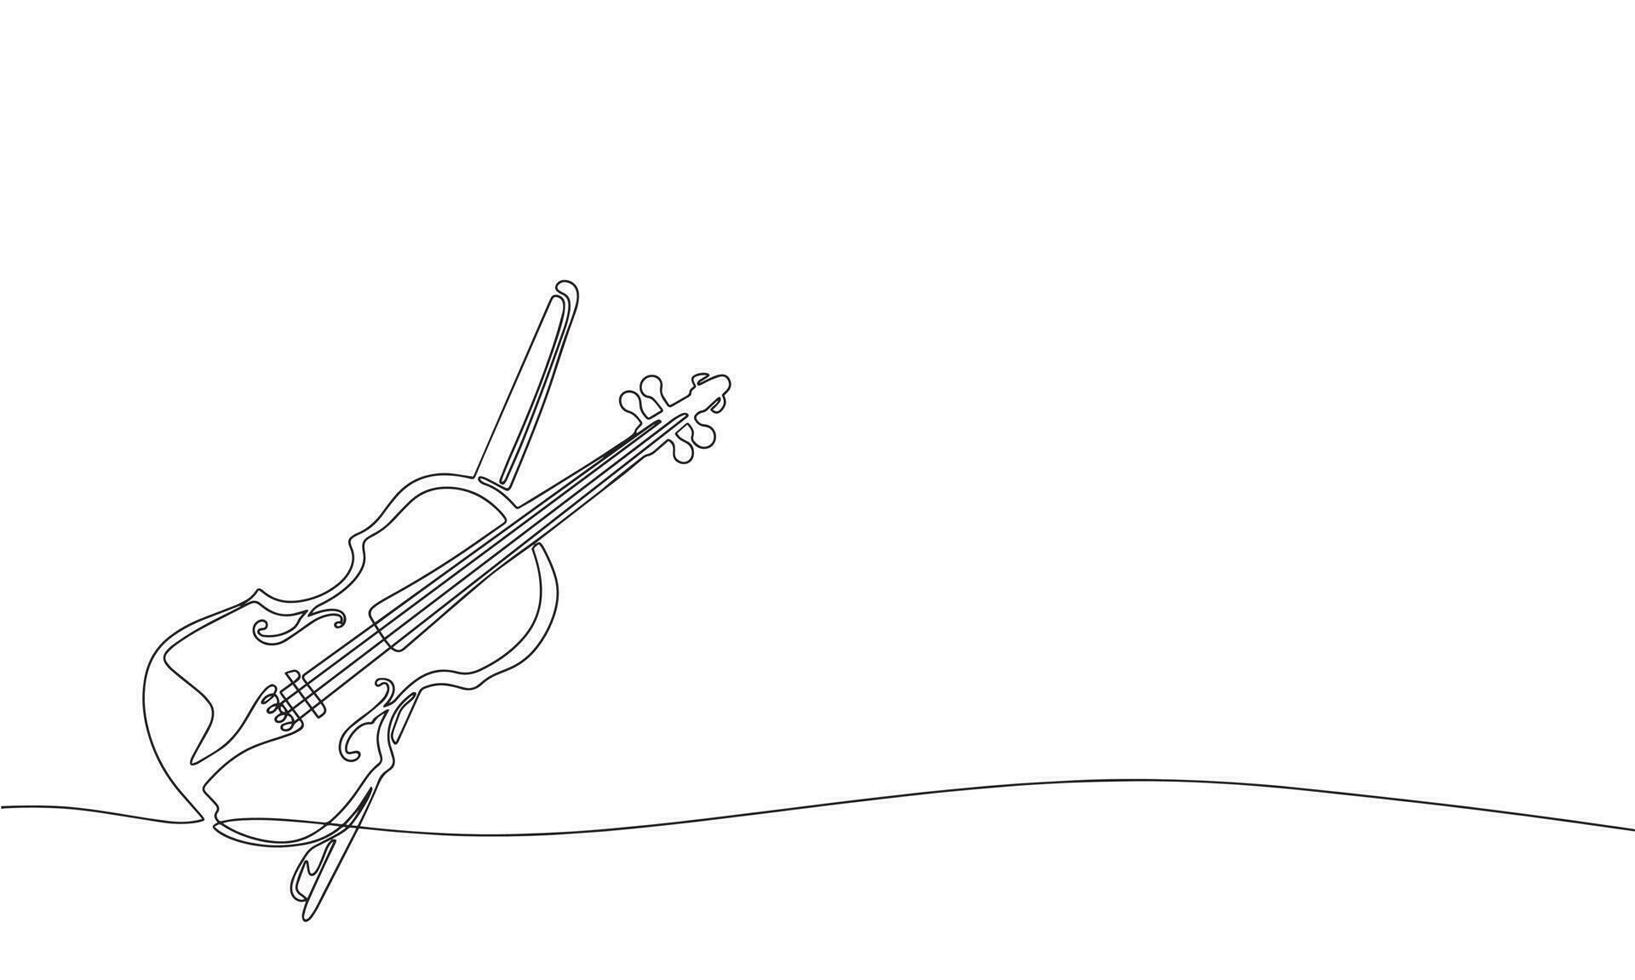 violon et arc. un ligne continu abstrait conception de musical instrument. ligne art, contour, silhouette, vecteur illustration.